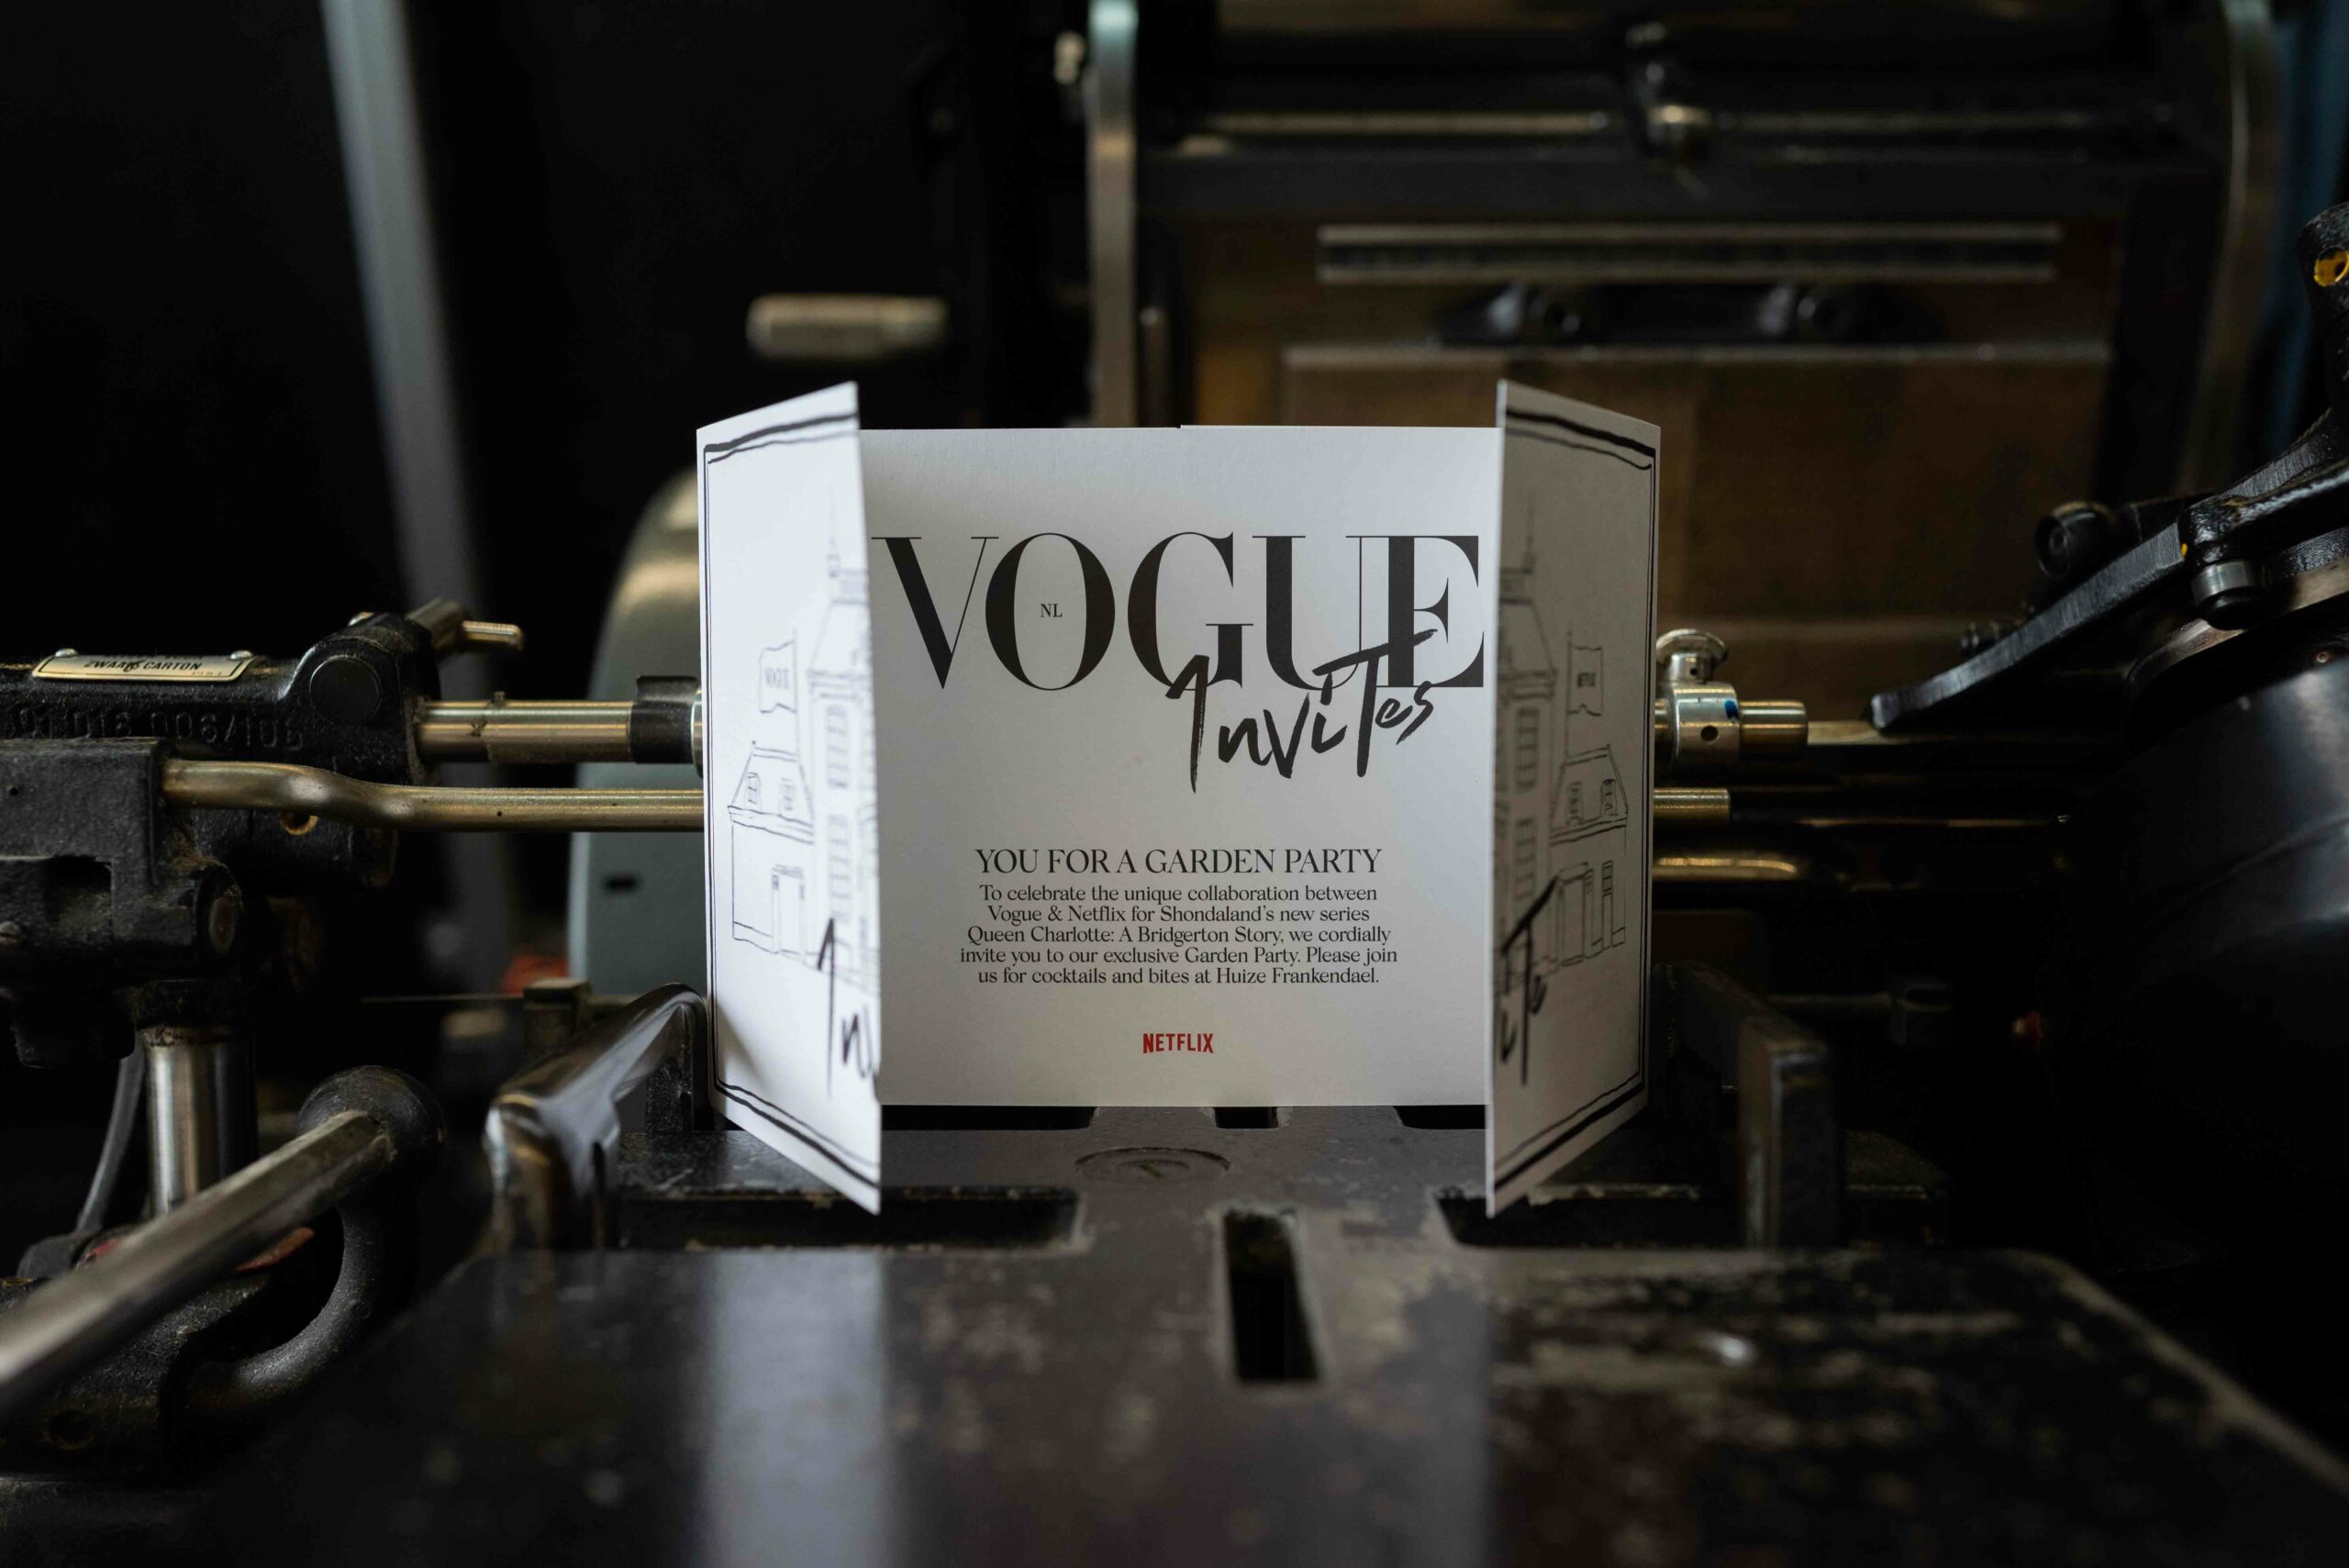 Luxe luikvouw Uitnodiging Vogue & Netfllix